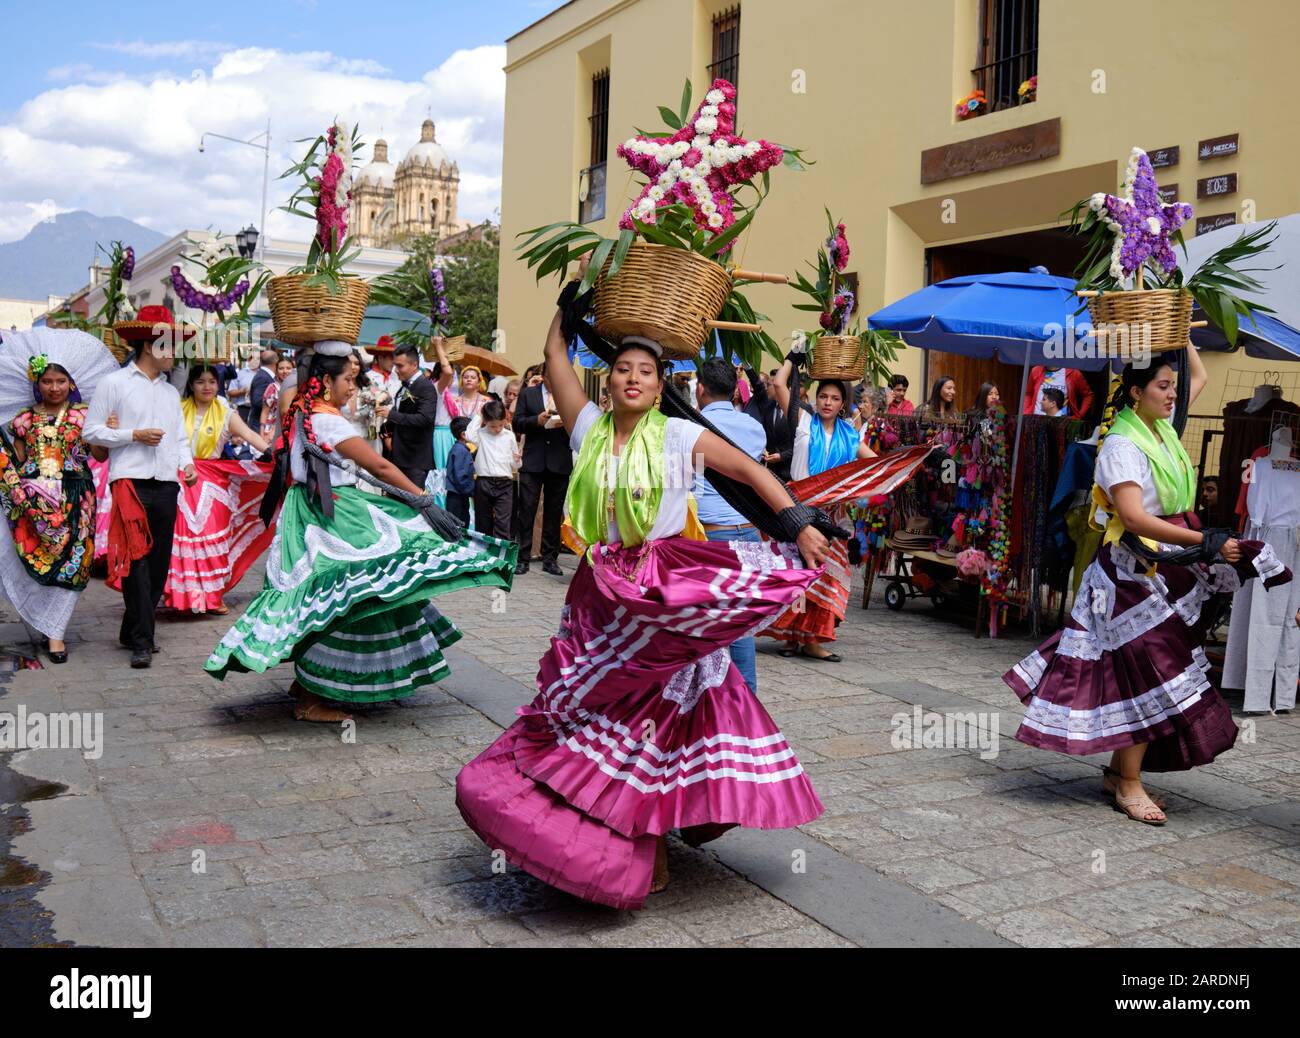 Femme dansant dans un ensemble traditionnel fluide avec panier de fleurs partie de défilé traditionnel dans les rues d'Oaxaca. Banque D'Images